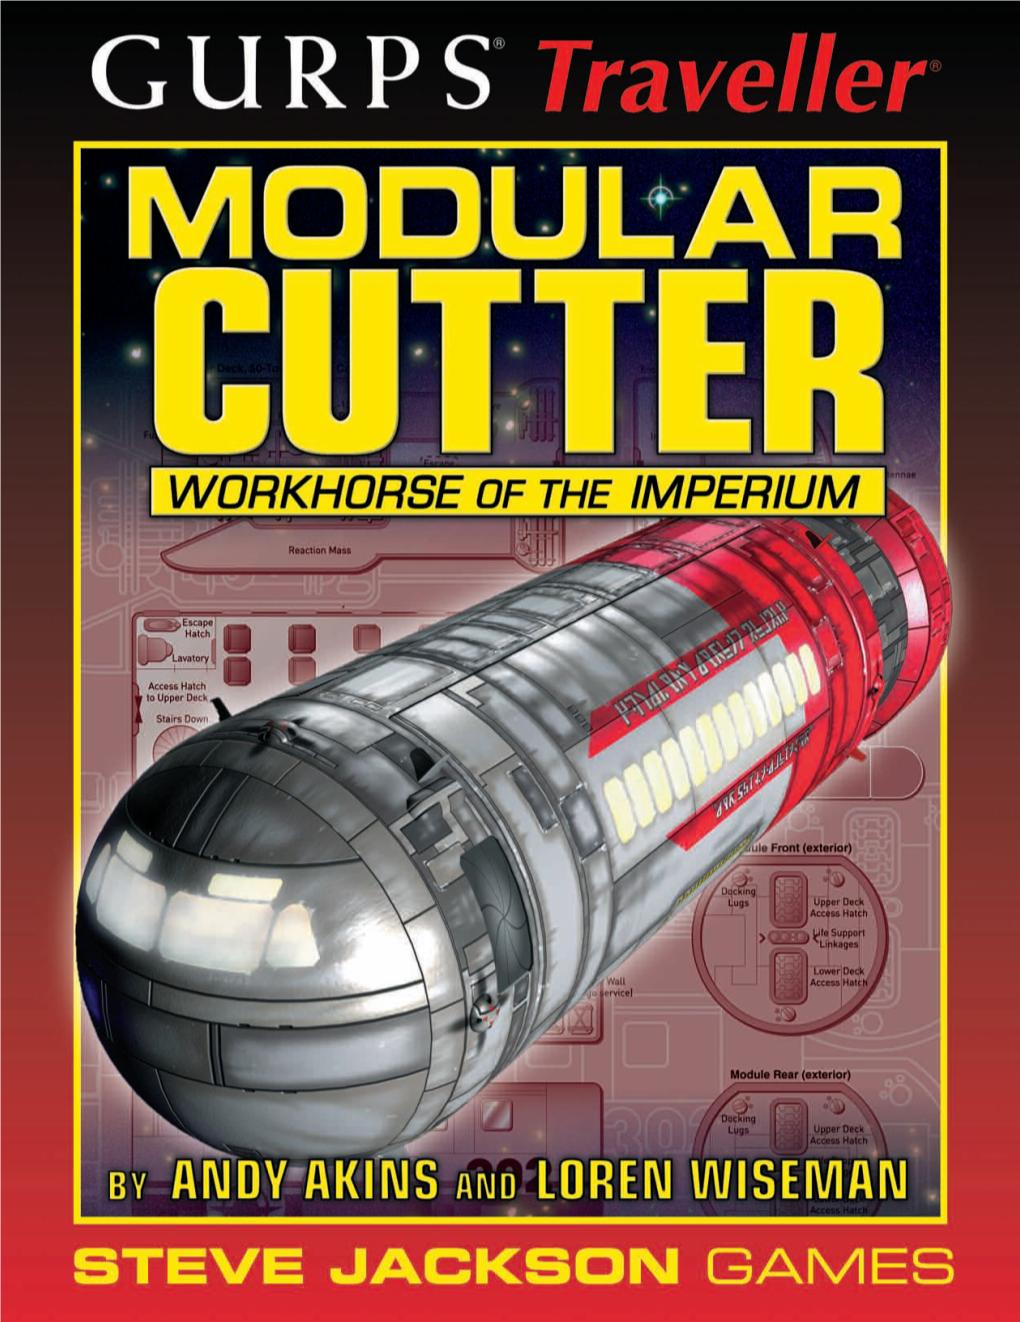 GURPS Traveller Classic: Modular Cutter